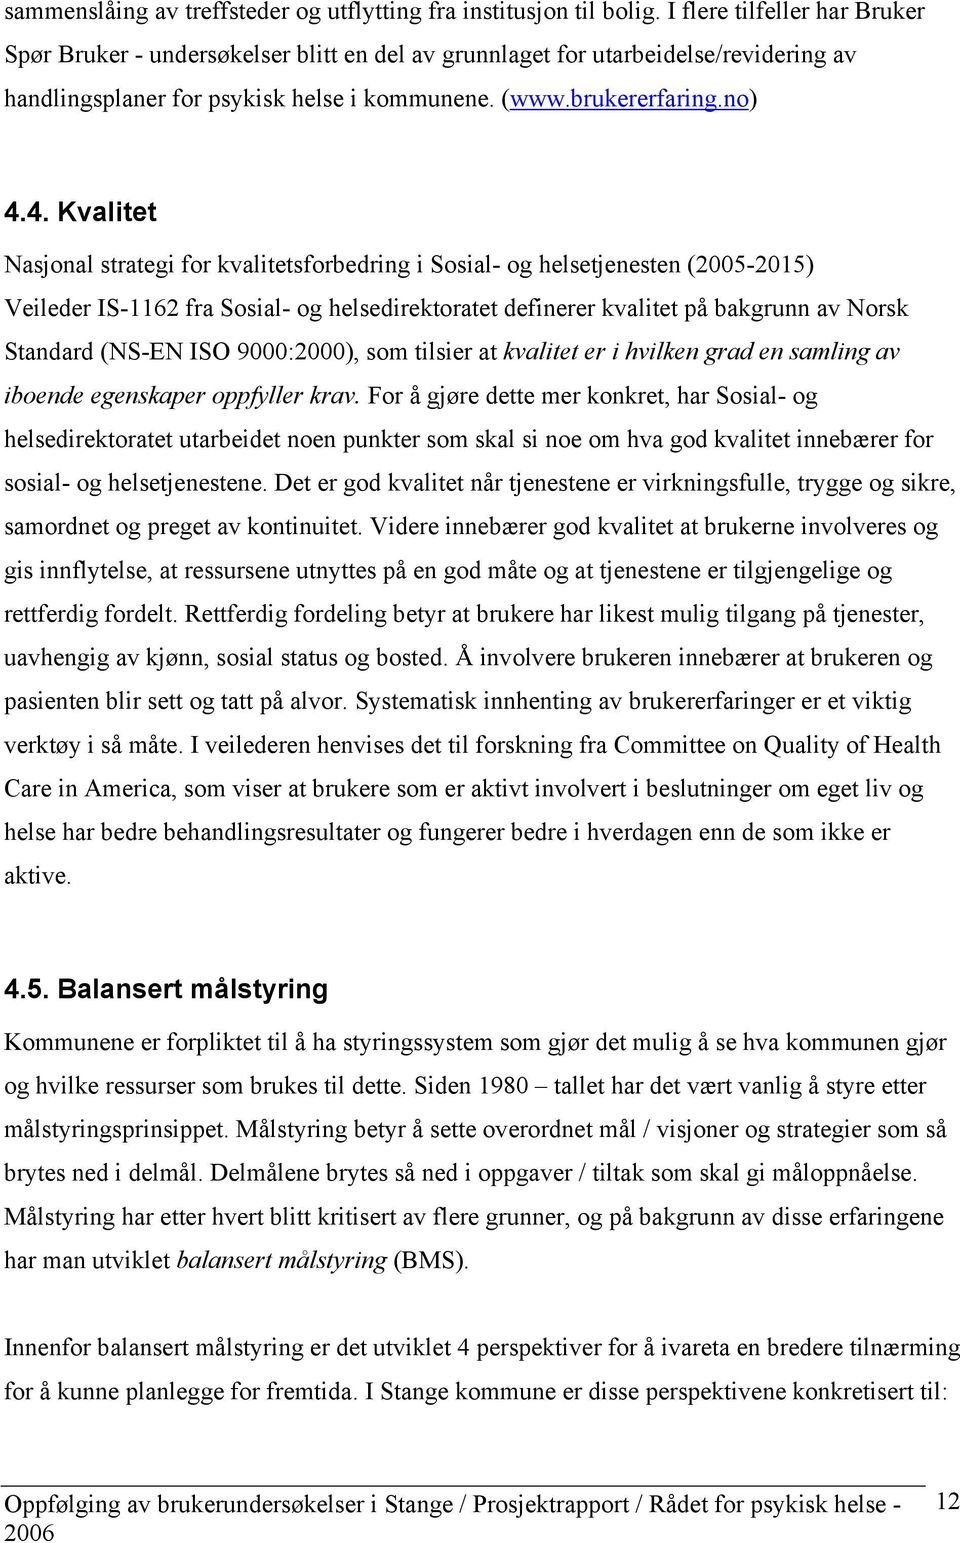 4. Kvalitet Nasjonal strategi for kvalitetsforbedring i Sosial- og helsetjenesten (2005-2015) Veileder IS-1162 fra Sosial- og helsedirektoratet definerer kvalitet på bakgrunn av Norsk Standard (NS-EN